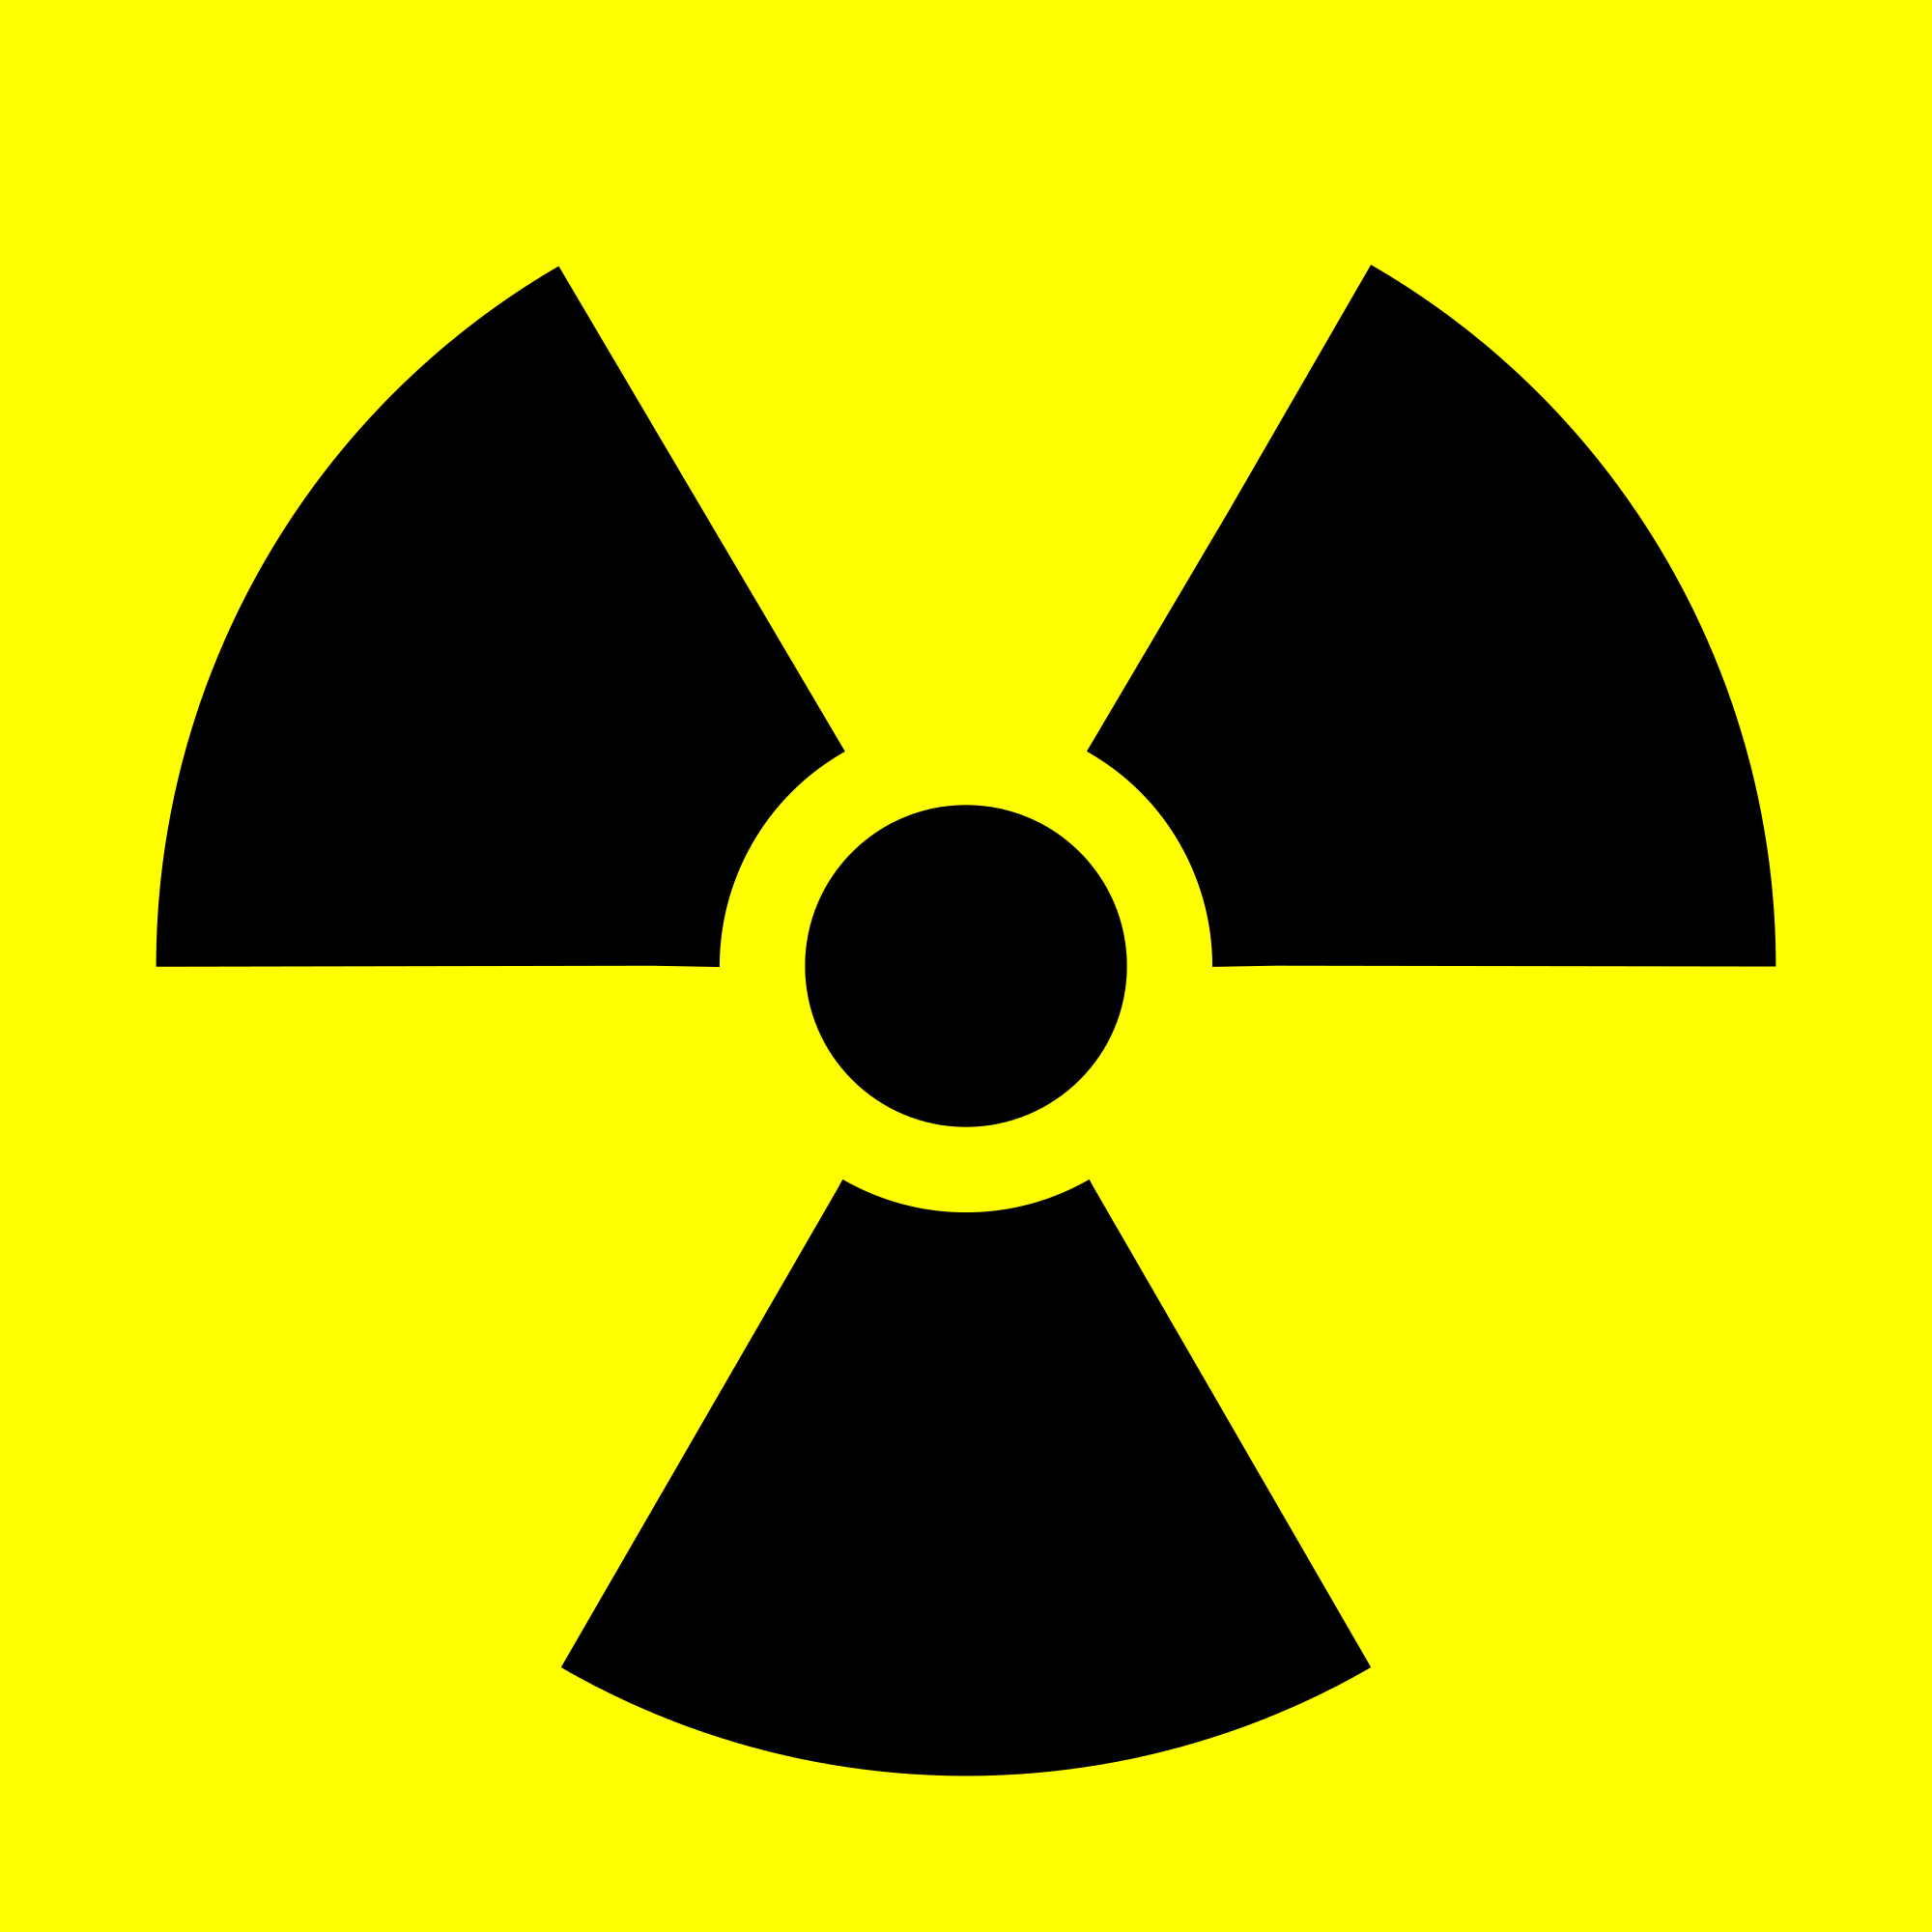 Radioactive contamination - Wikipedia, the free encyclopedia